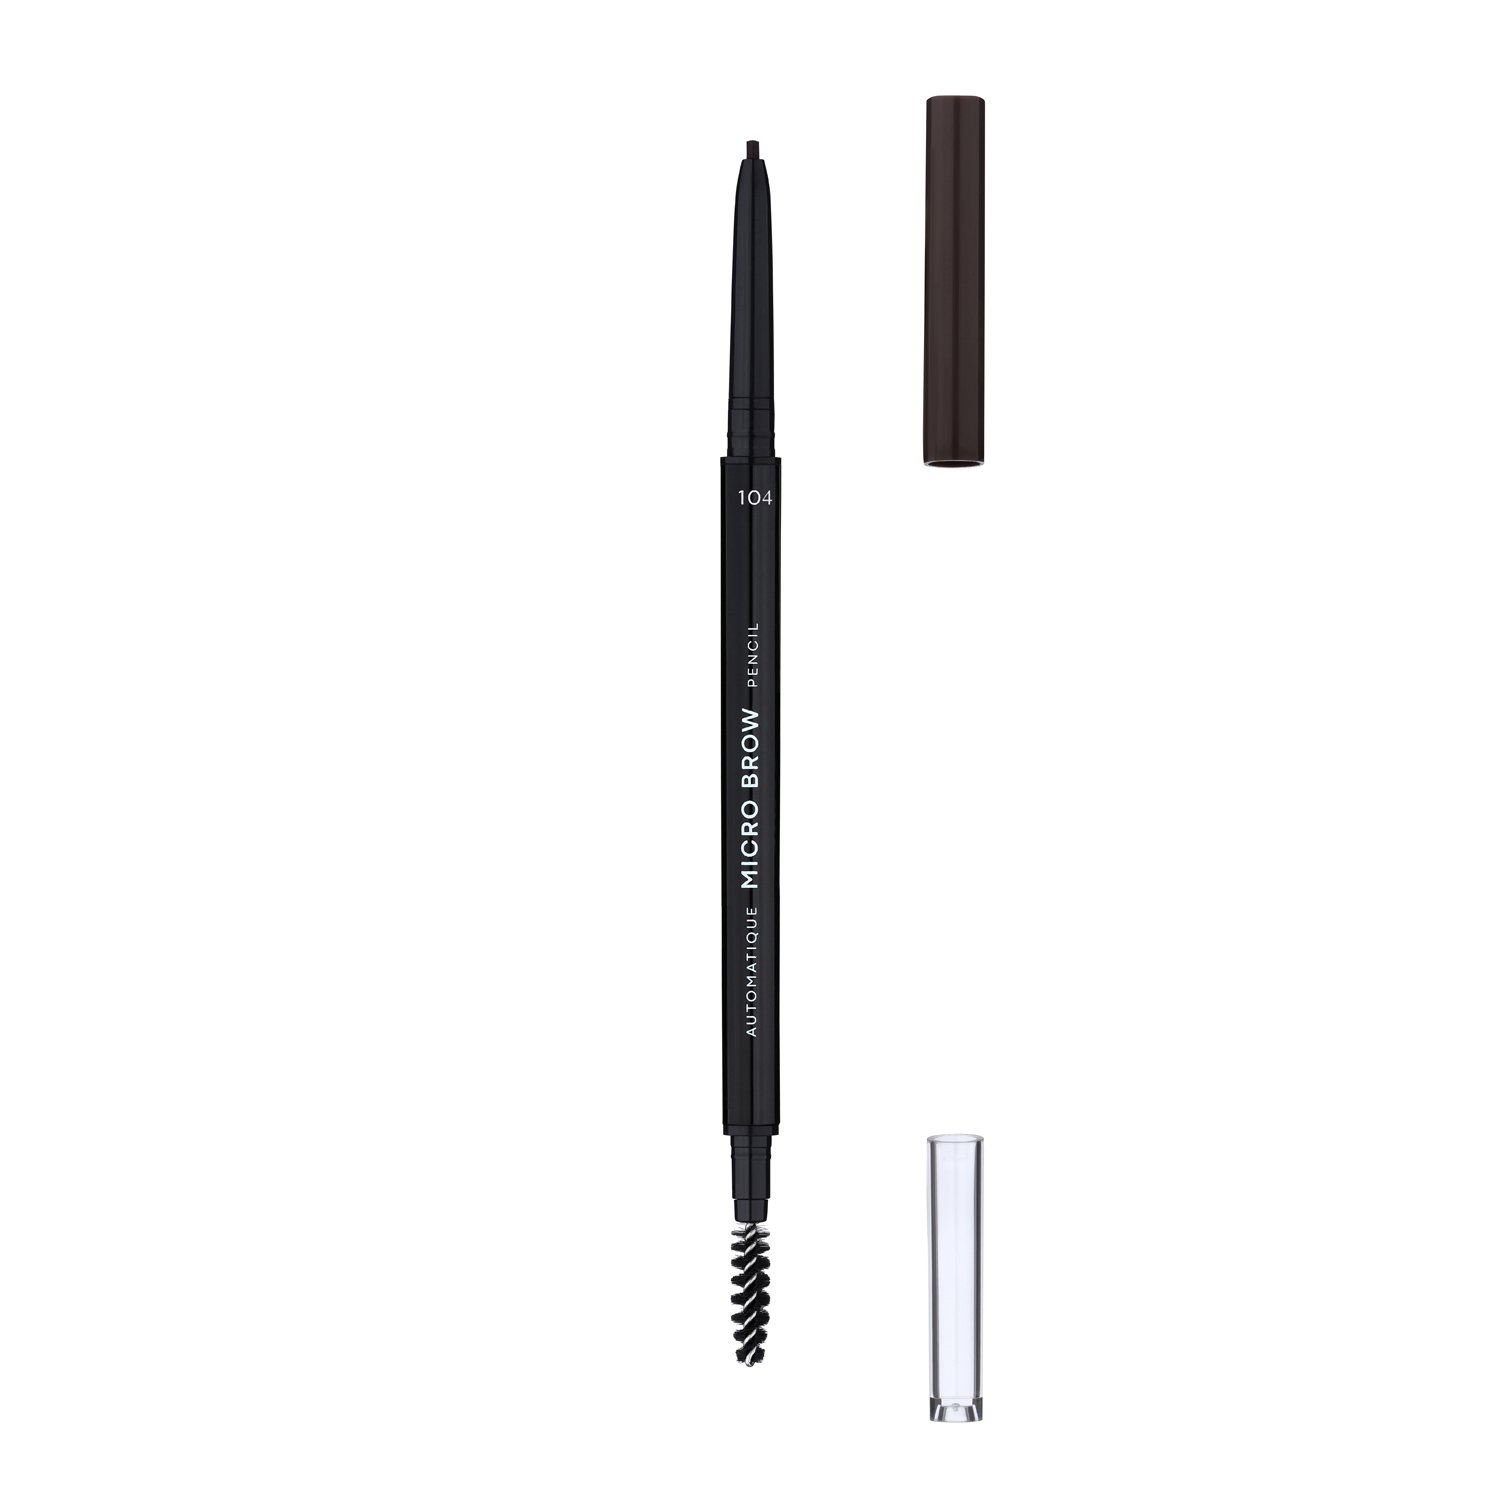 Олівець для брів LN Professional Micro Brow Pencil тон 104, 0.12 г - фото 3